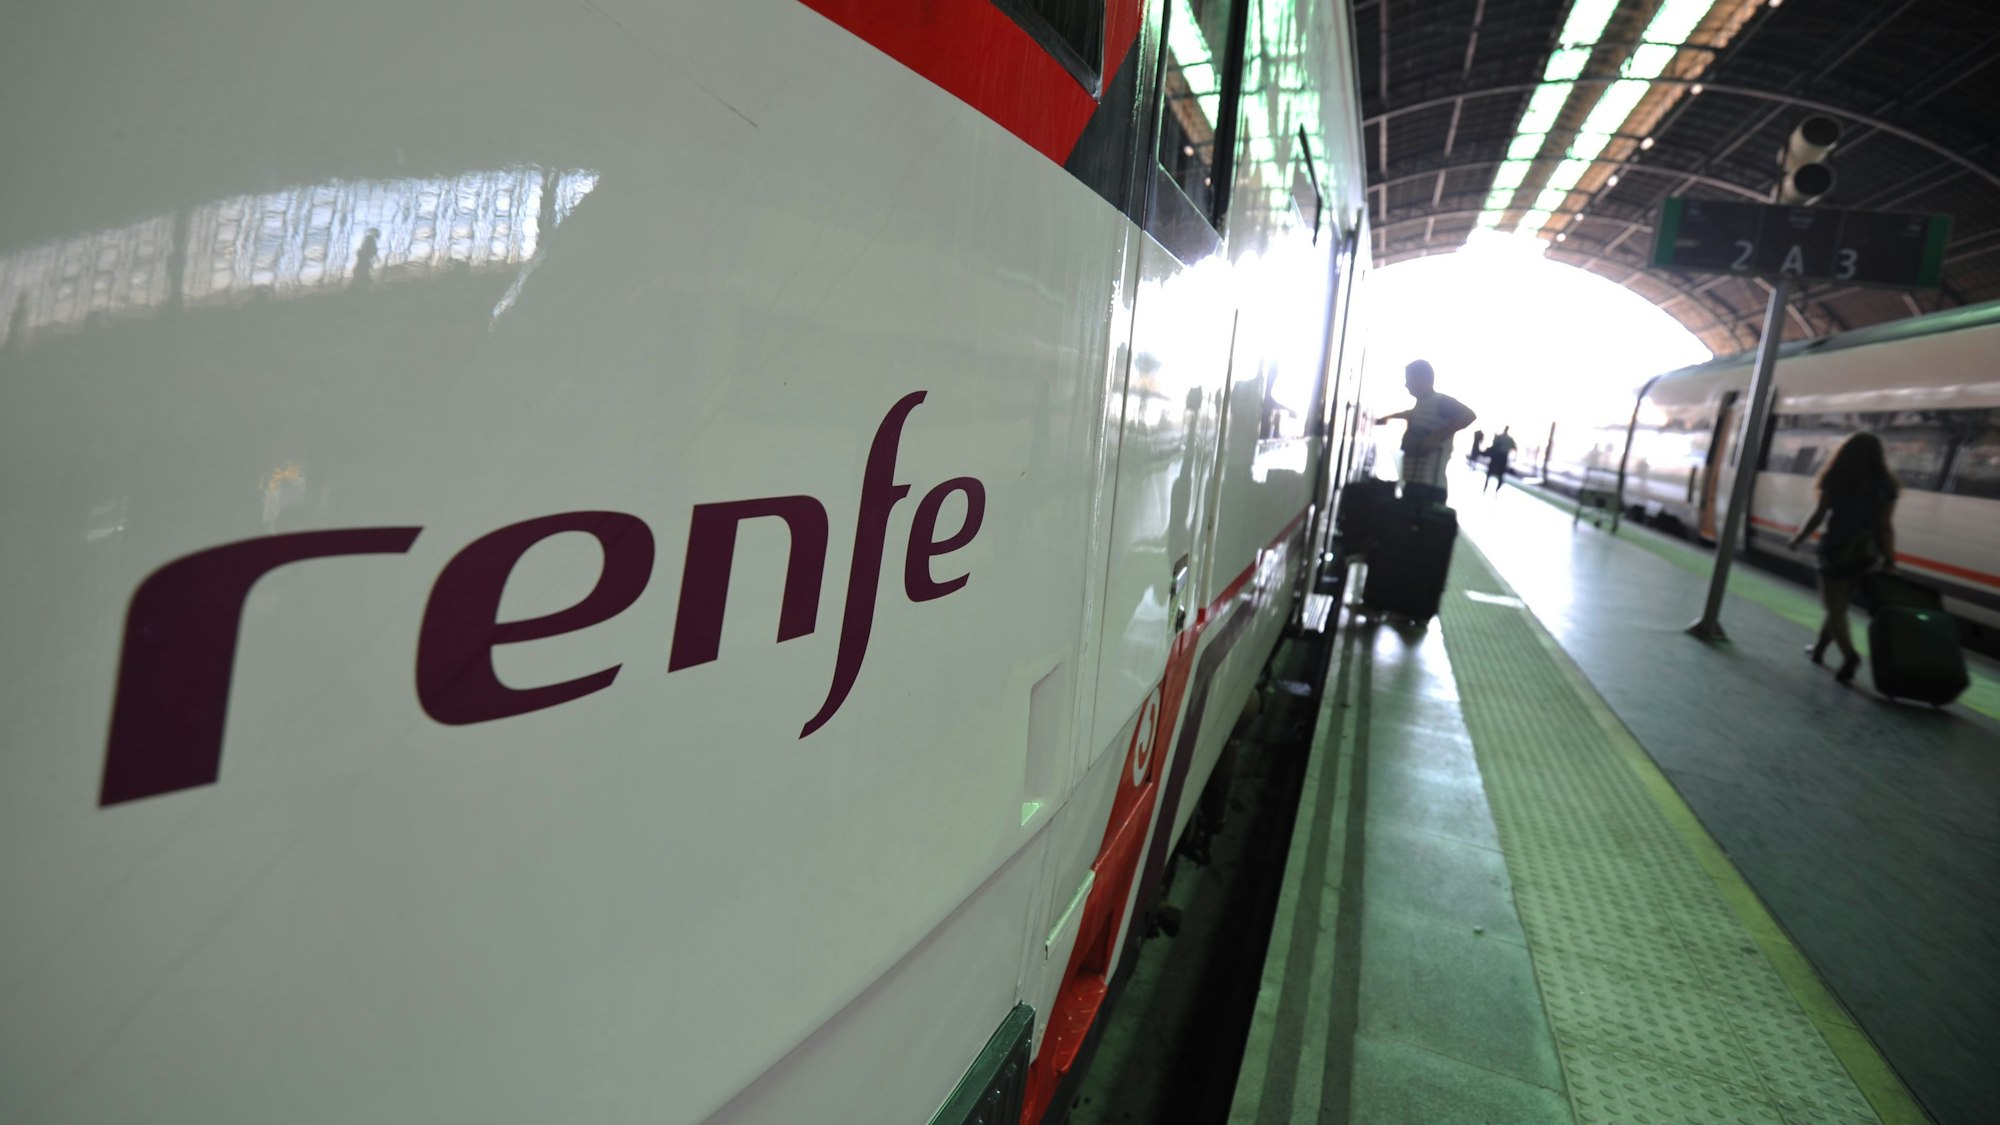 Ein Zug des staatlichen spanischen Eisenbahn-Unternehmens Renfe steht im Bahnhof. (zu dpa «Eurostar-Züge könnten im Kanaltunnel Konkurrenz bekommen») +++ dpa-Bildfunk +++